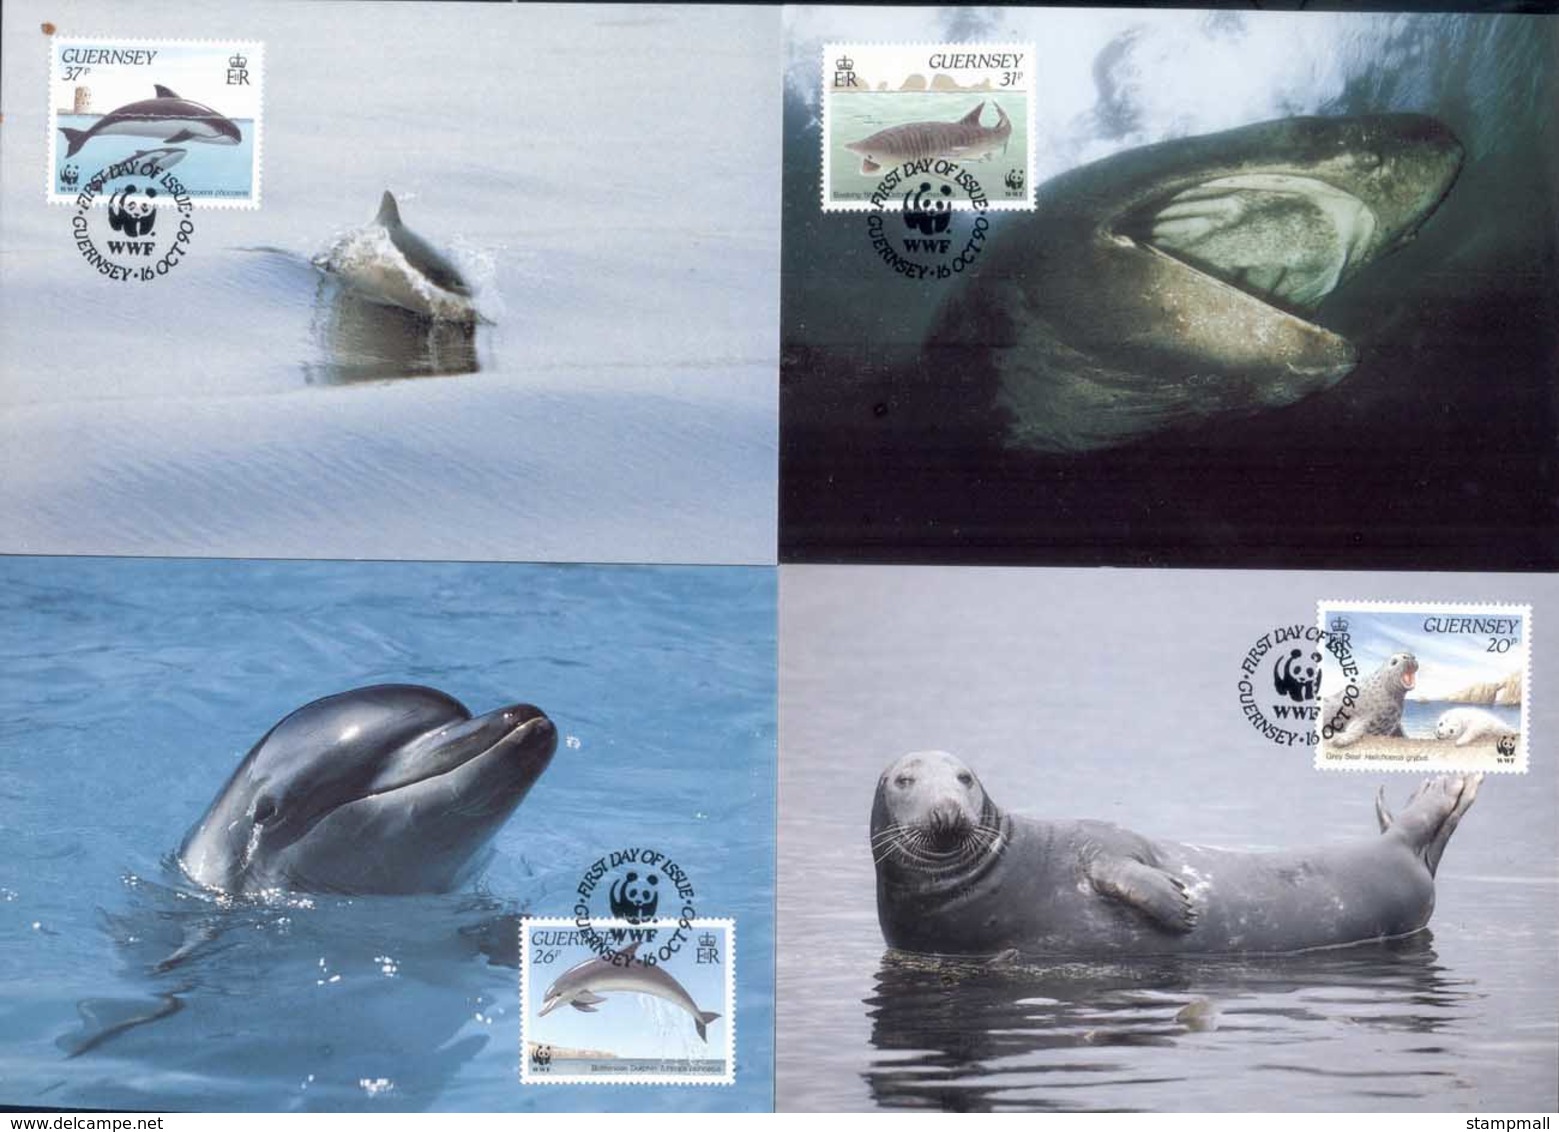 Guernsey 1990 WWF Guernsey Sea Life, Seal, Whale Maxicards - Guernsey